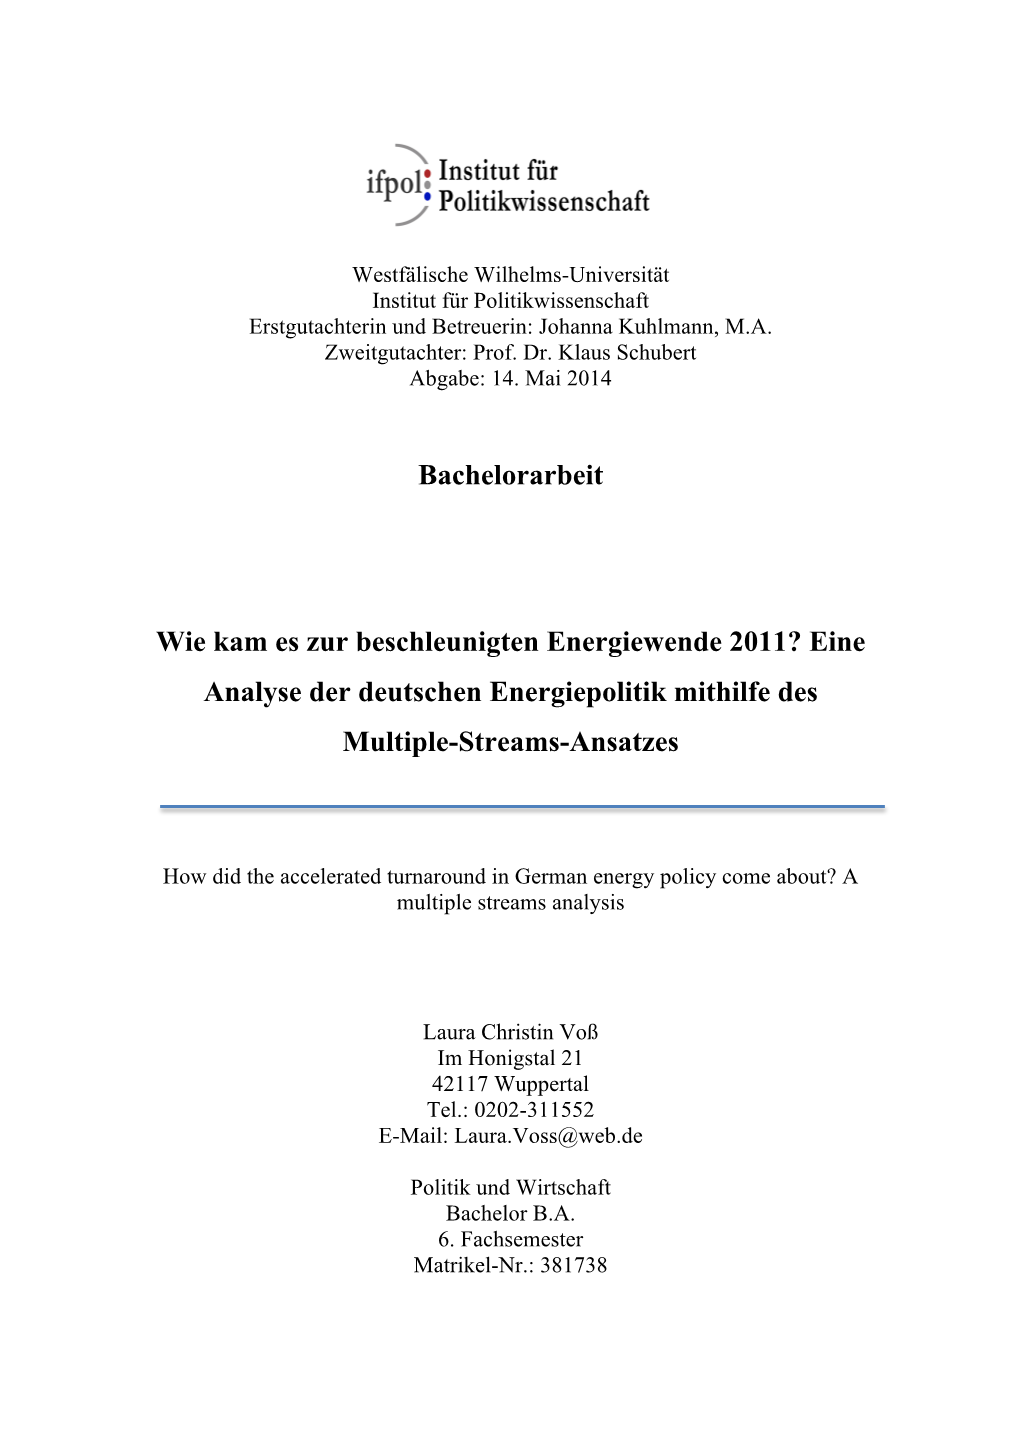 Bachelorarbeit Wie Kam Es Zur Beschleunigten Energiewende 2011?